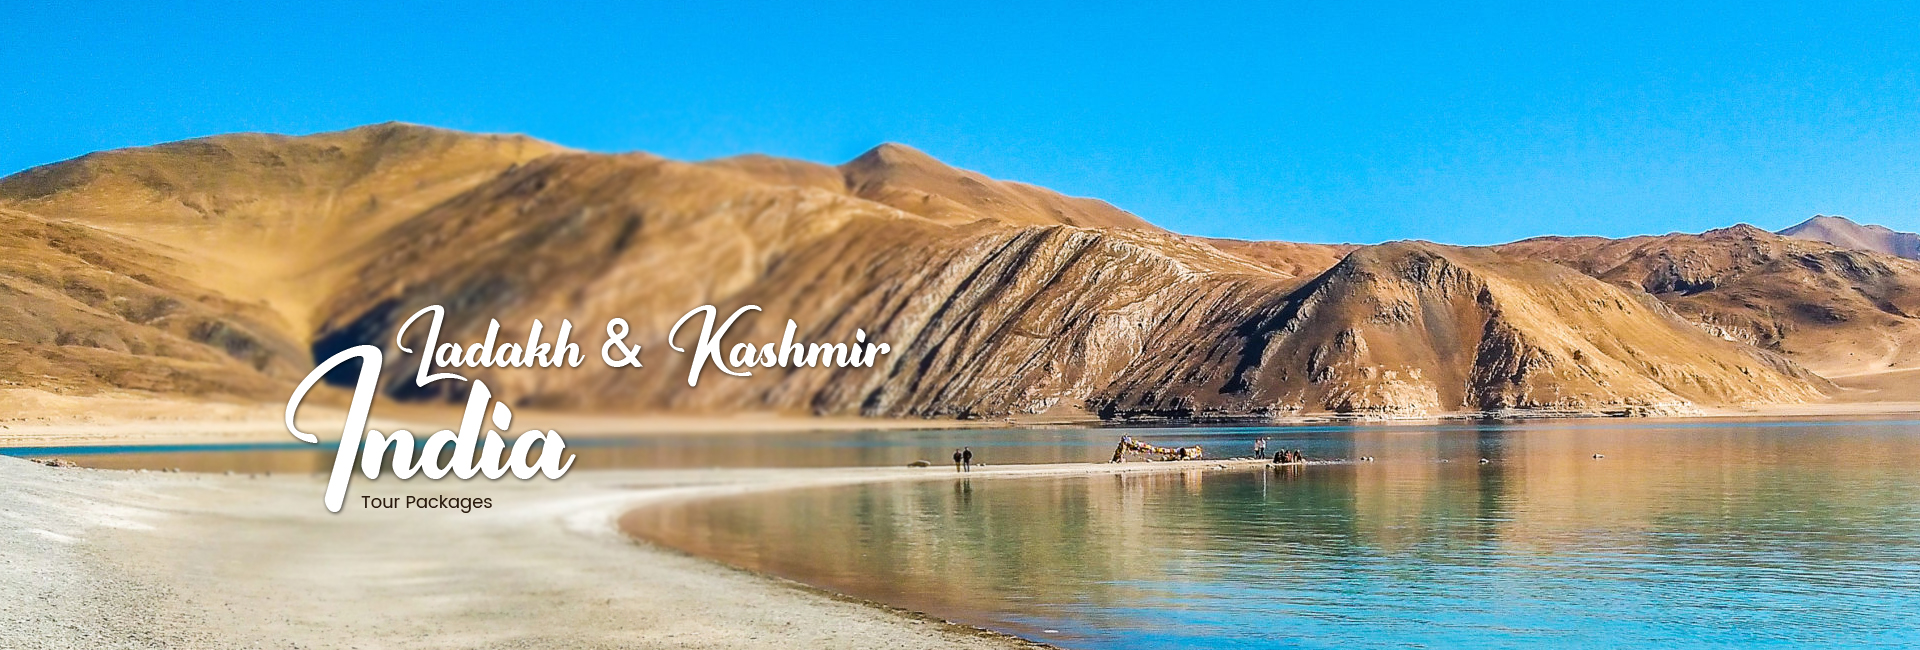 Ladakh & Kashmir Tour Packages